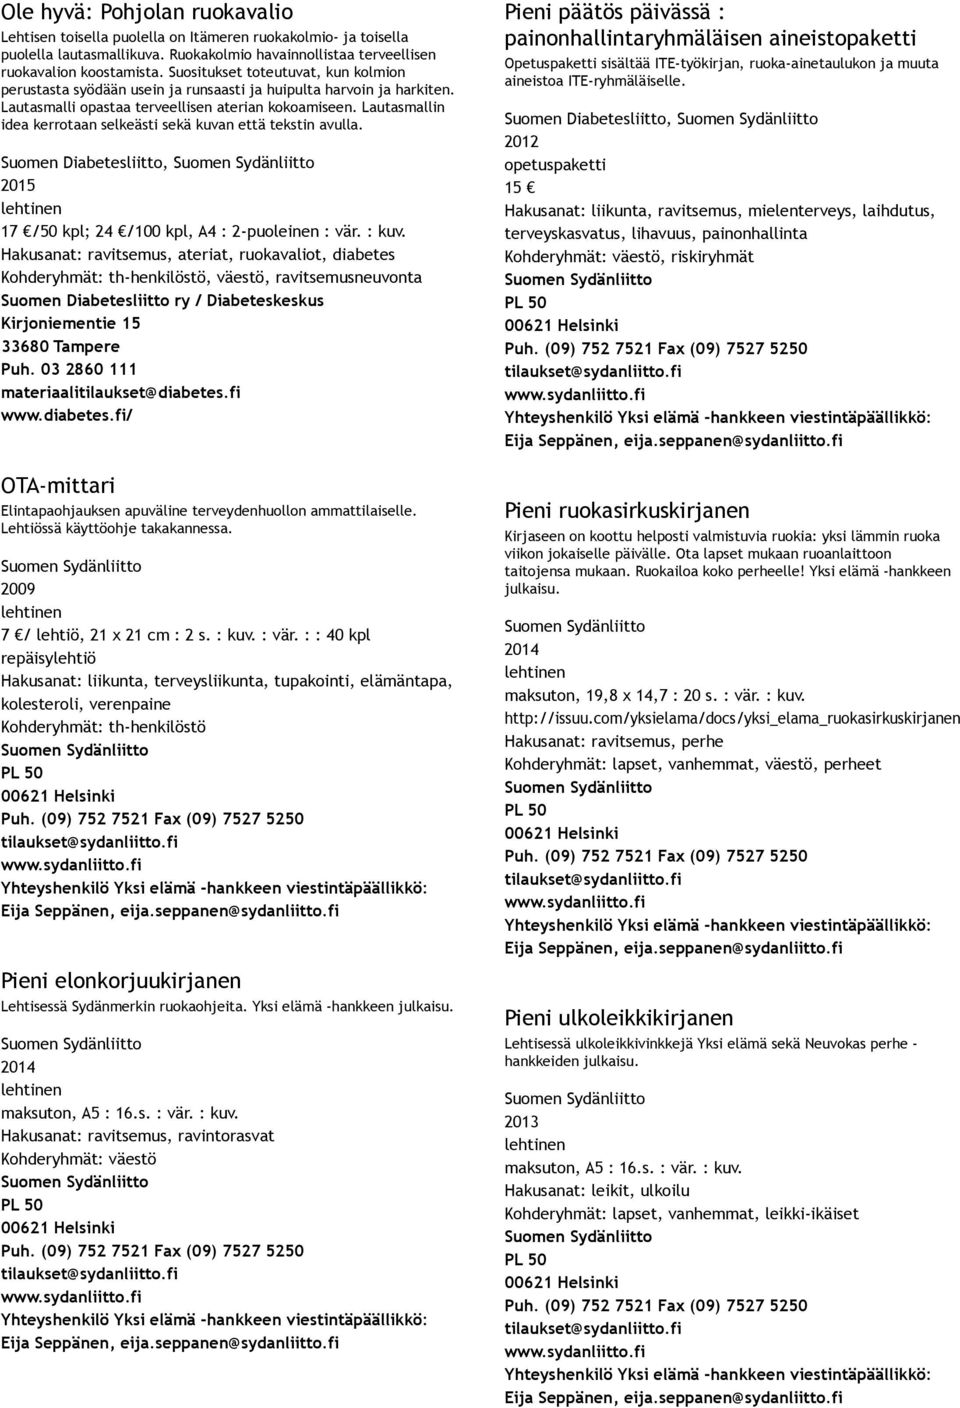 Lautasmallin idea kerrotaan selkeästi sekä kuvan että tekstin avulla. Suomen Diabetesliitto, 17 /50 kpl; 24 /100 kpl, A4 : 2 puoleinen : vär. : kuv.